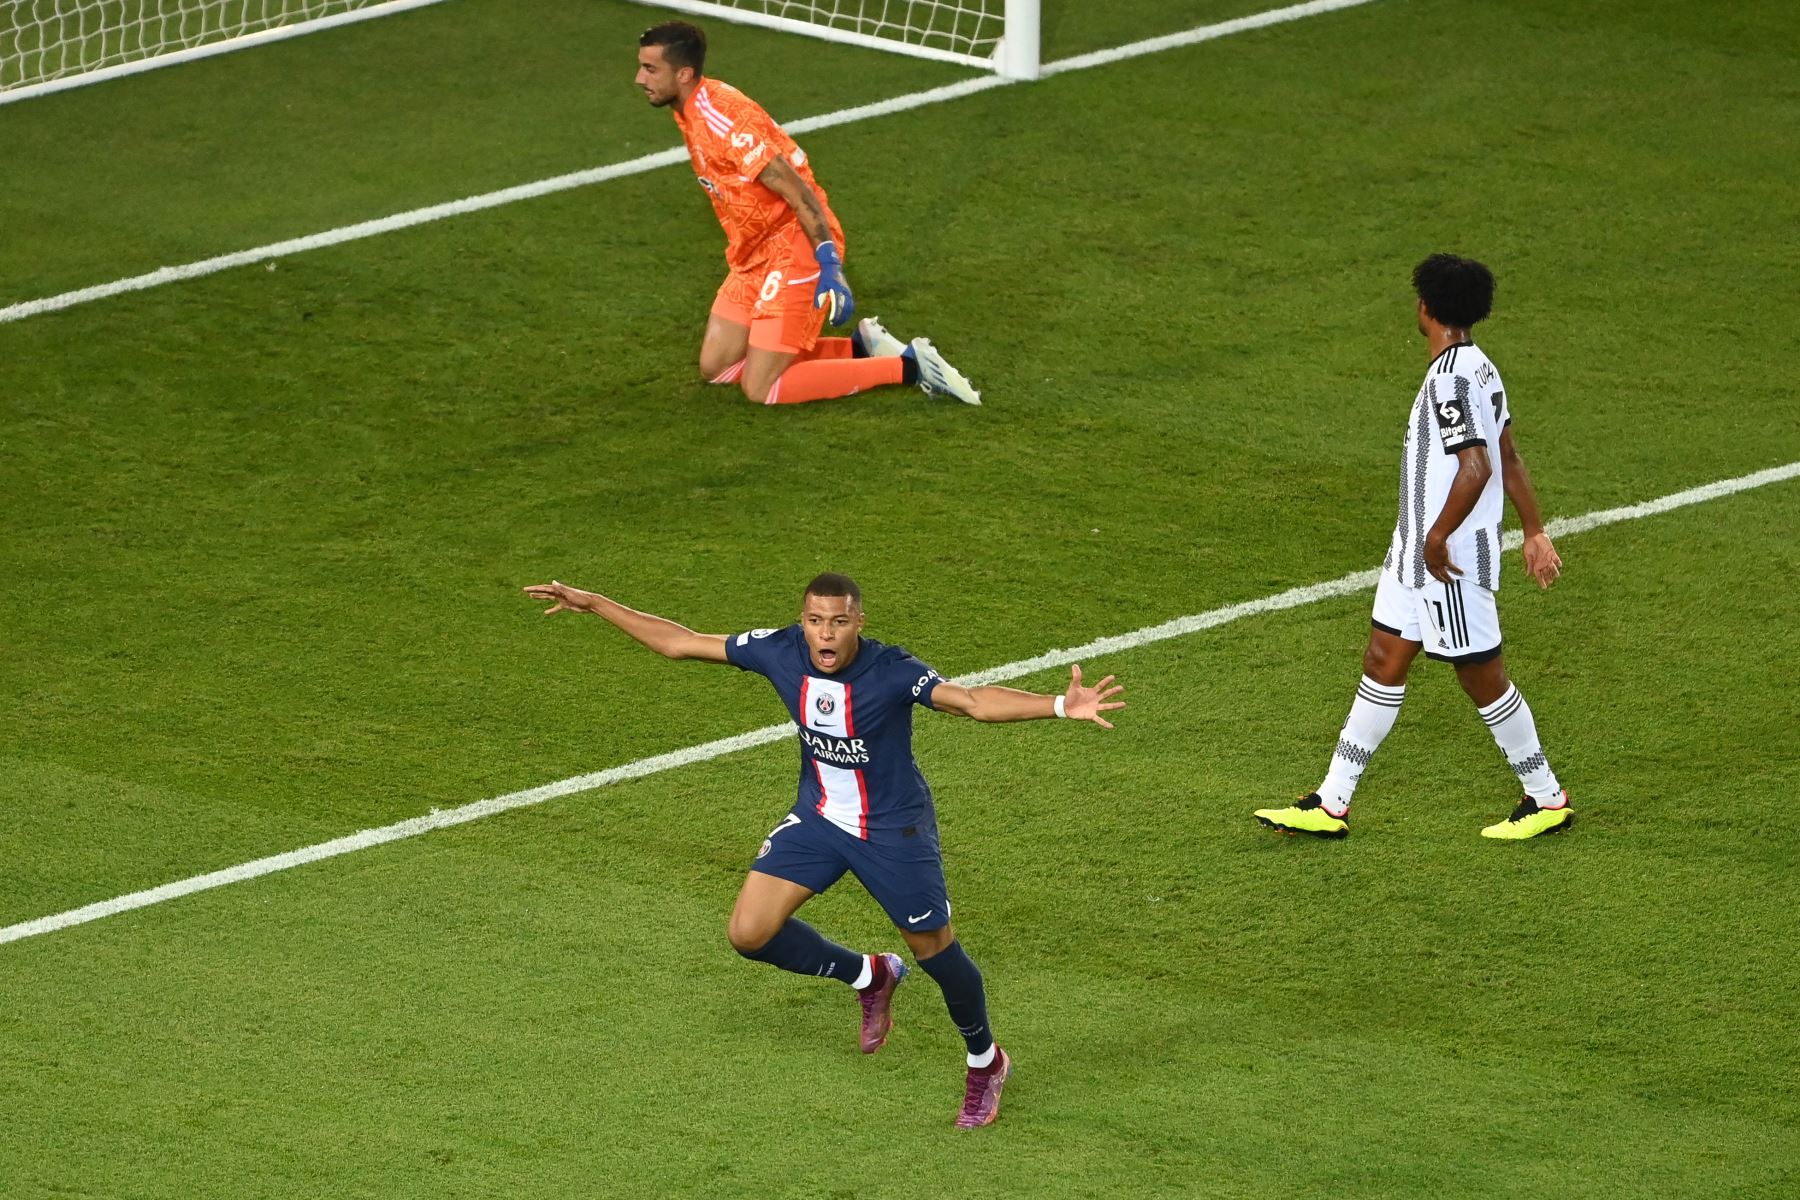 El delantero francés del Paris Saint-Germain, Kylian Mbappé, celebra marcar el gol 2-0 durante el partido de ida del grupo H de la Liga de Campeones de la UEFA entre el Paris Saint-Germain (PSG) y la Juventus en el estadio Parc des Princes de París.
Foto: AFP